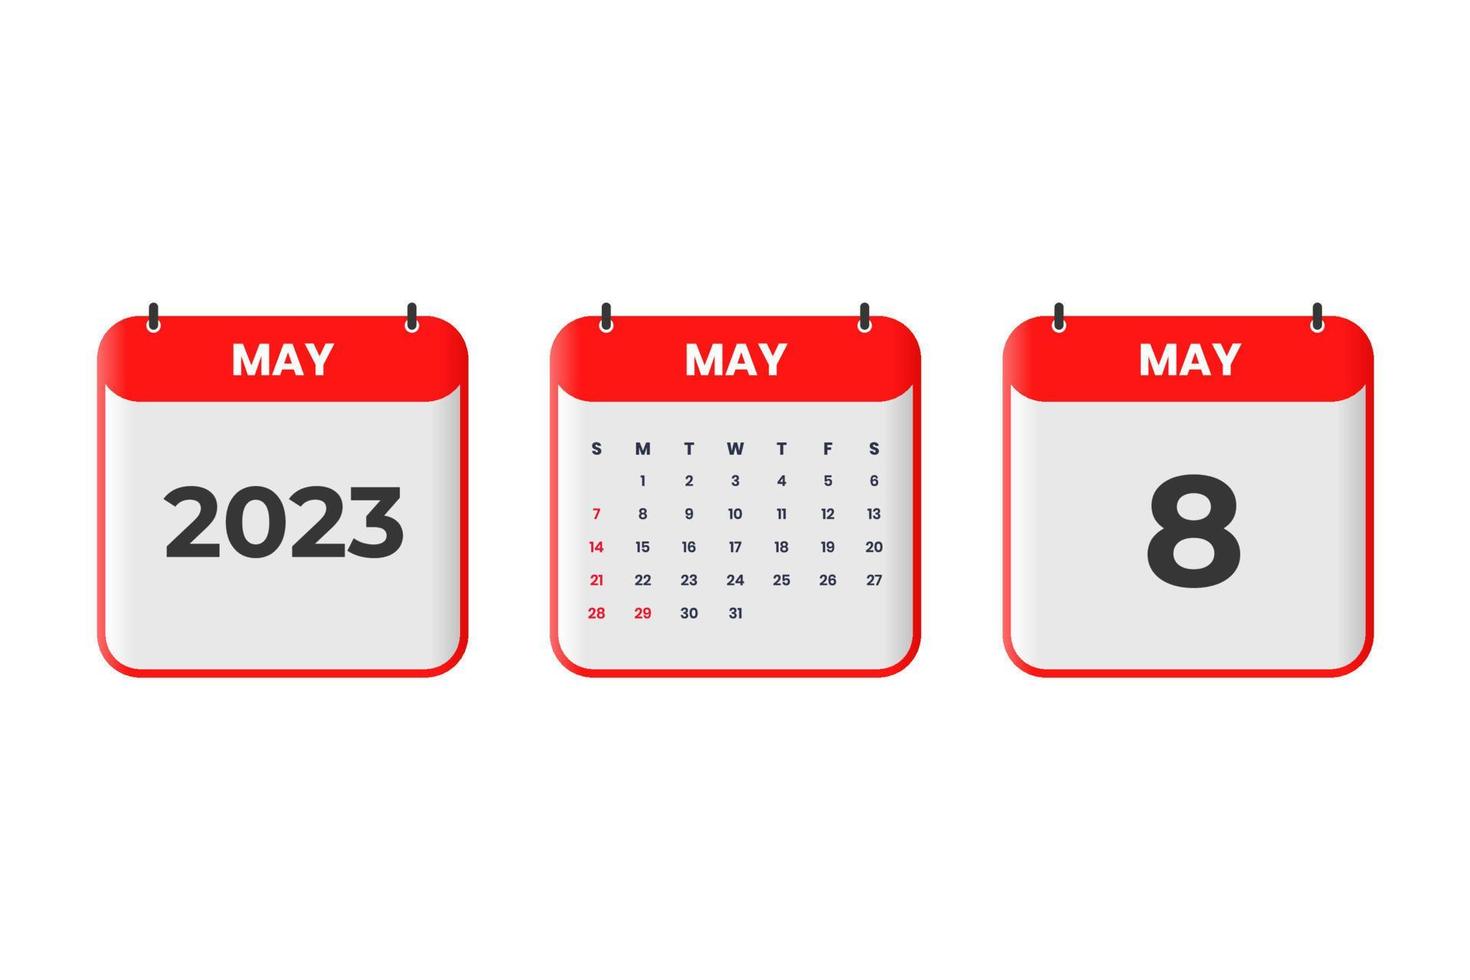 conception du calendrier de mai 2023. 8 mai 2023 icône de calendrier pour l'horaire, le rendez-vous, le concept de date importante vecteur